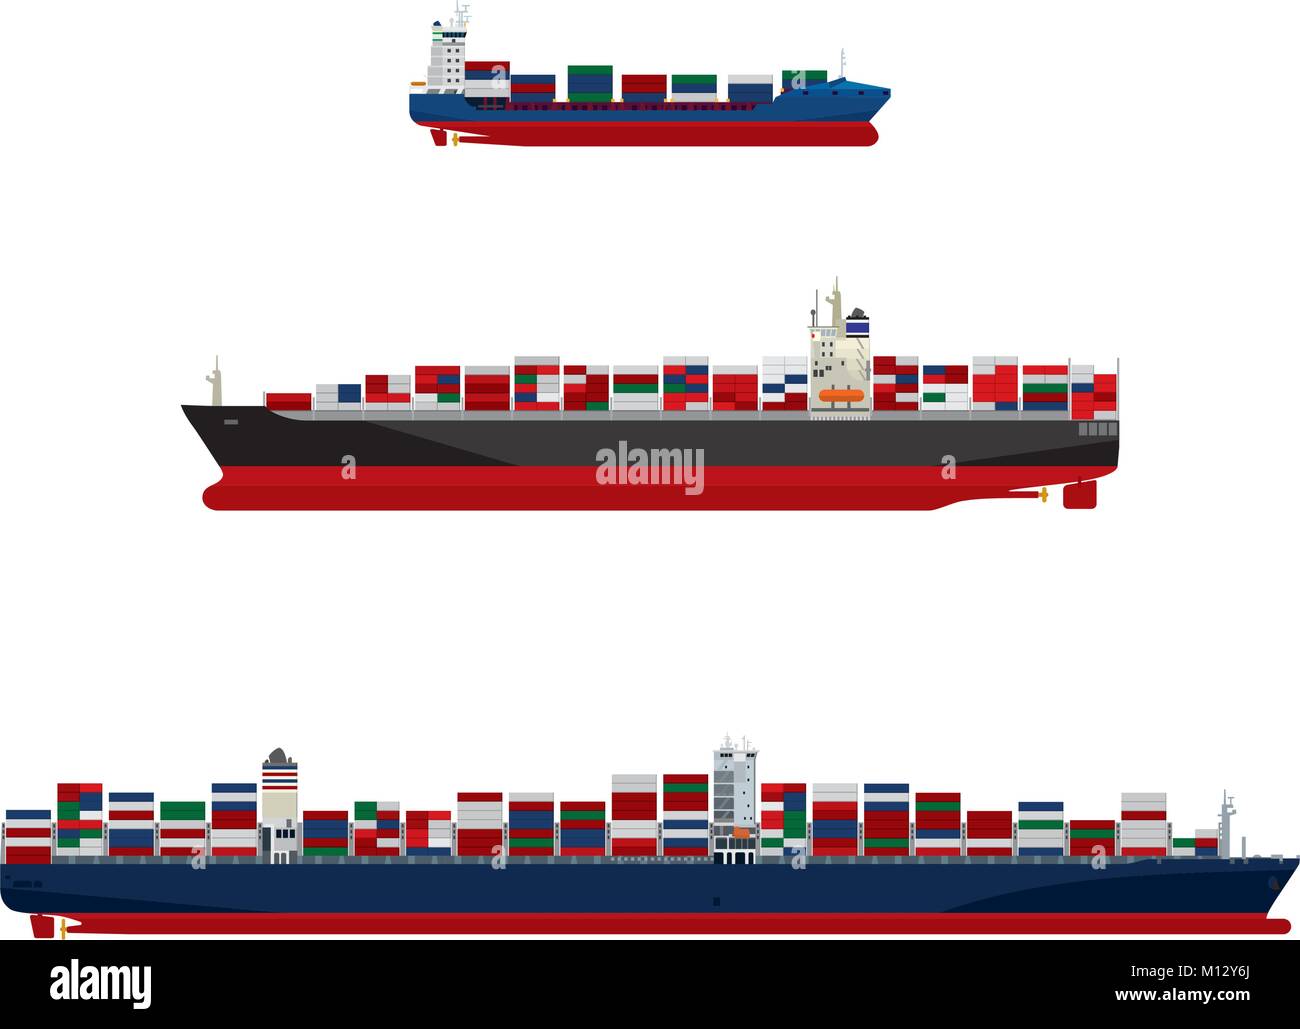 La carga de los buques portacontenedores en tres tamaños. Barco feeder, clase Panamax y ultra-gran buque portacontenedores ilustración vectorial Ilustración del Vector